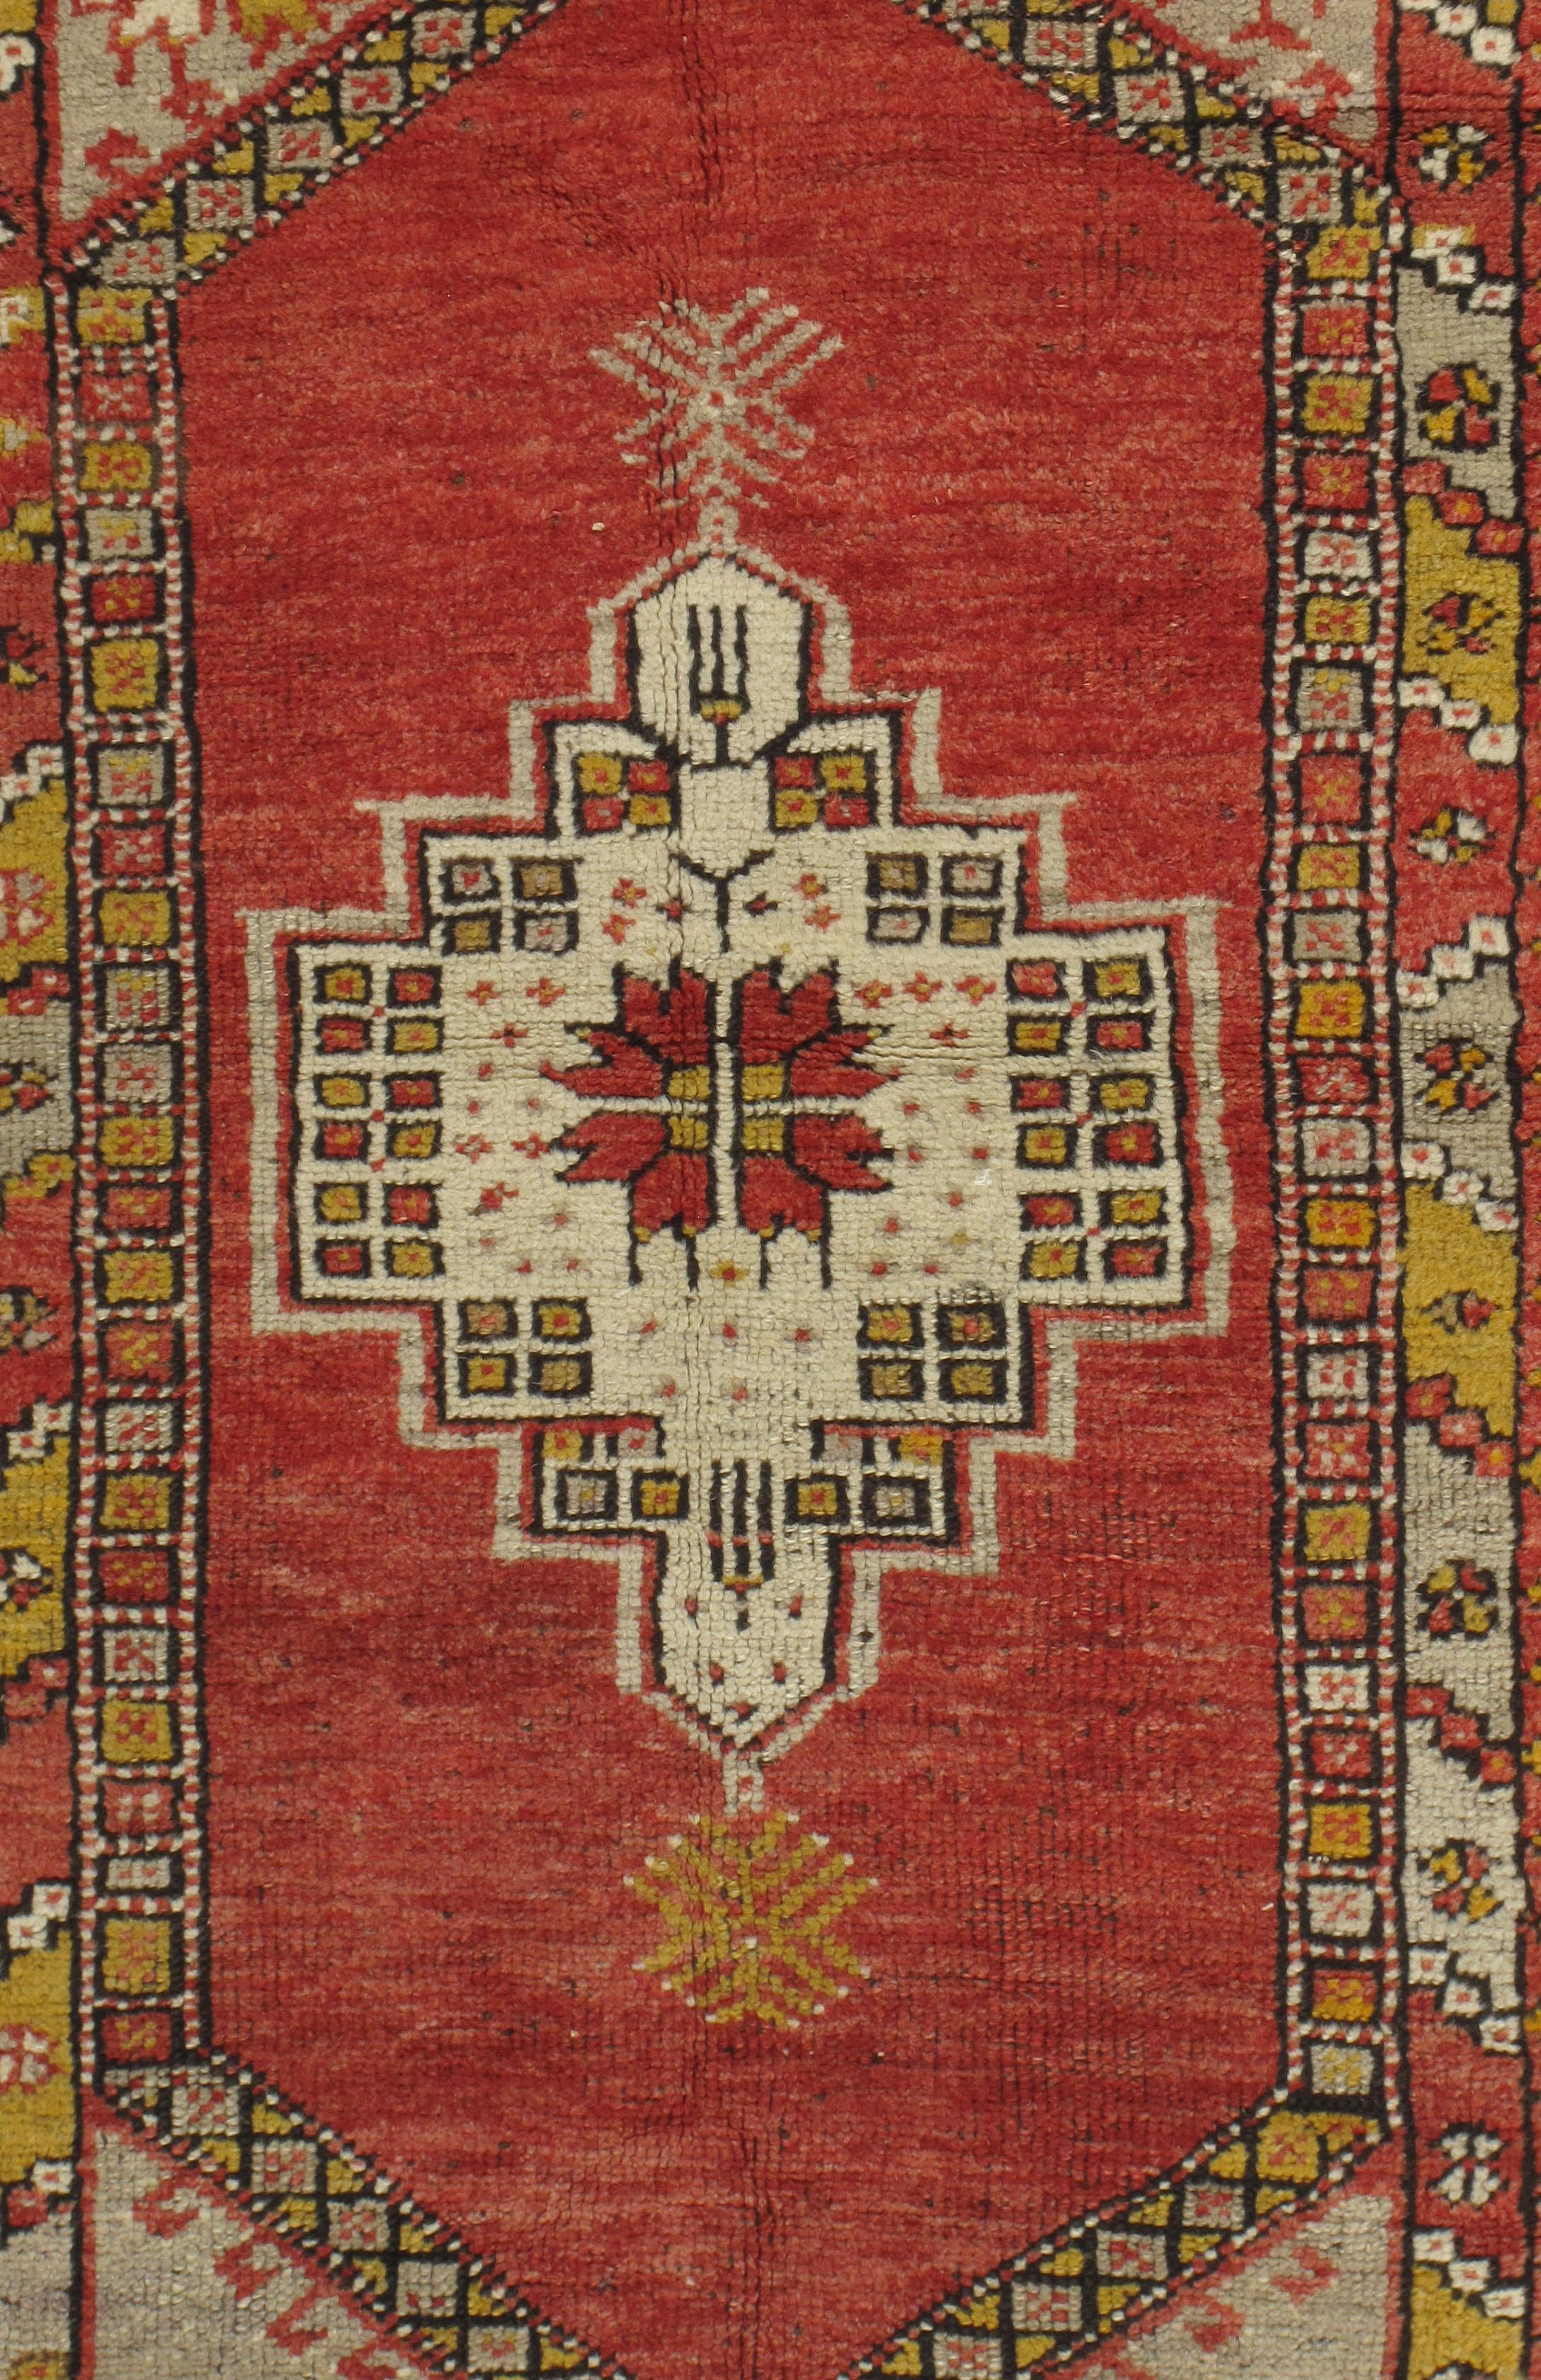 Vintage Türkisch Oushak Teppich 3'5 X 5'1. Handgeknüpft in der Türkei, wo die Teppichweberei eher eine Kultur als ein Geschäft ist. Teppiche von Oushak sind bekannt für die hohe Qualität ihrer Wolle, ihre schönen Muster und warmen Farben. Diese